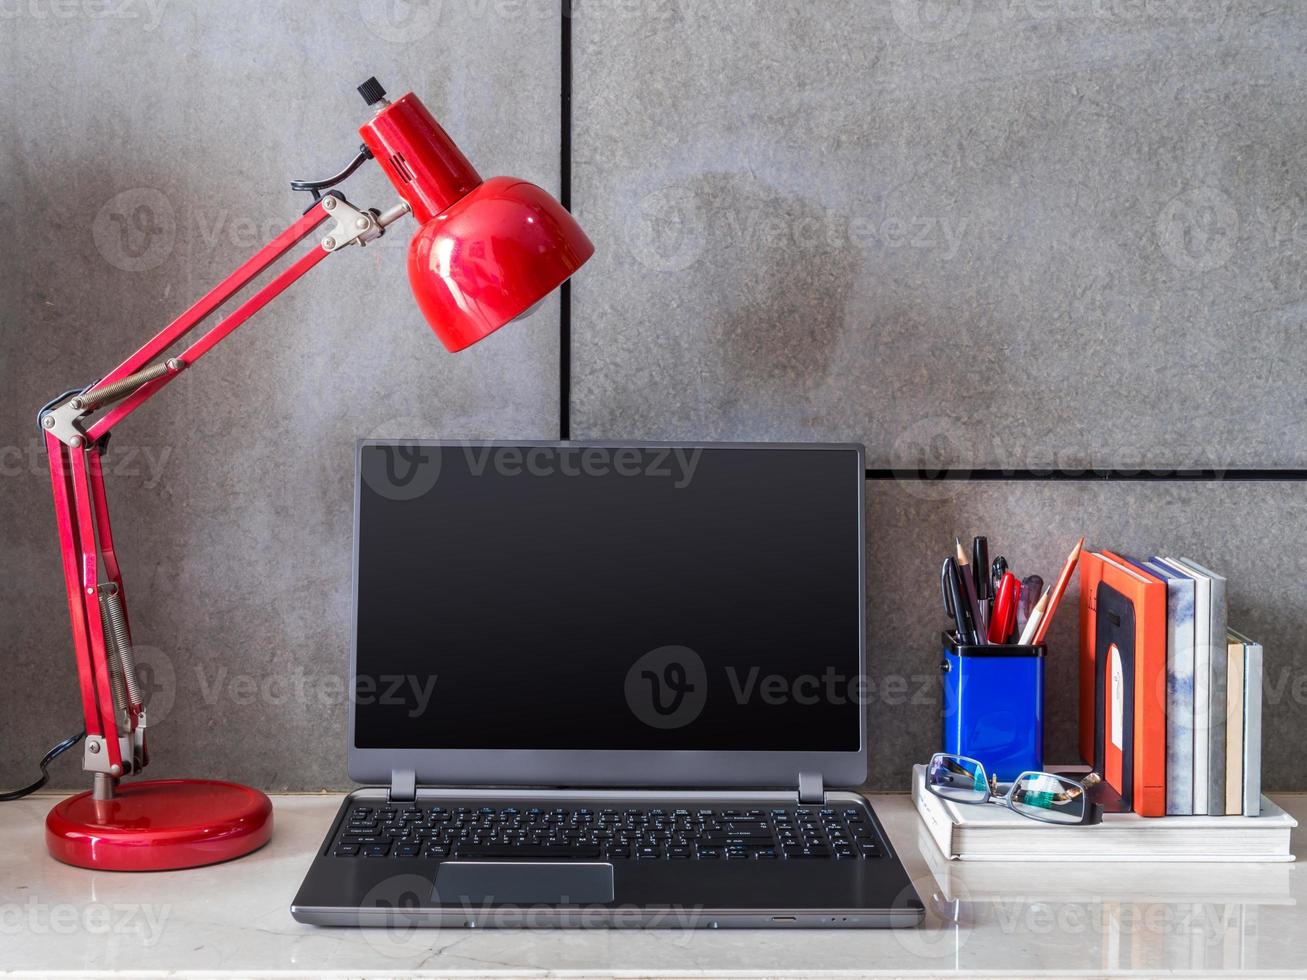 escritorio de oficina moderno con laptop y lámpara foto